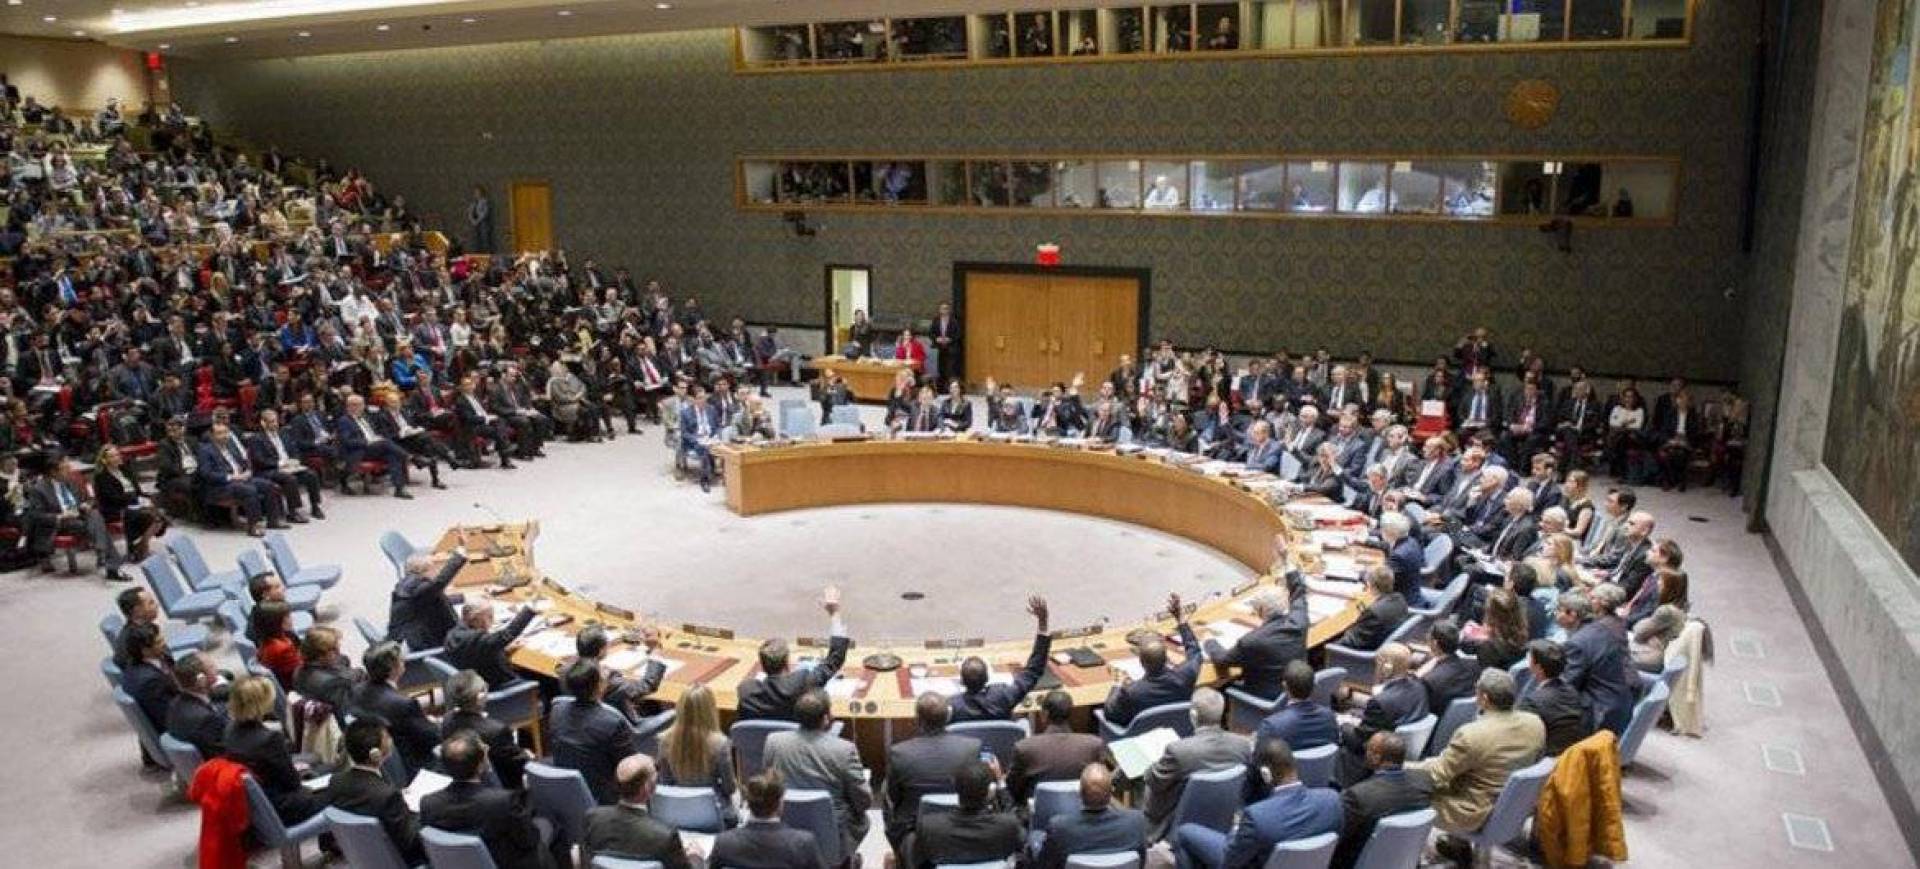 الولايات المتحدة الأمريكية طلبت عقد جلسة طارئة لمجلس الأمن الدولي الإثنين المقبل حول أوكرانيا.